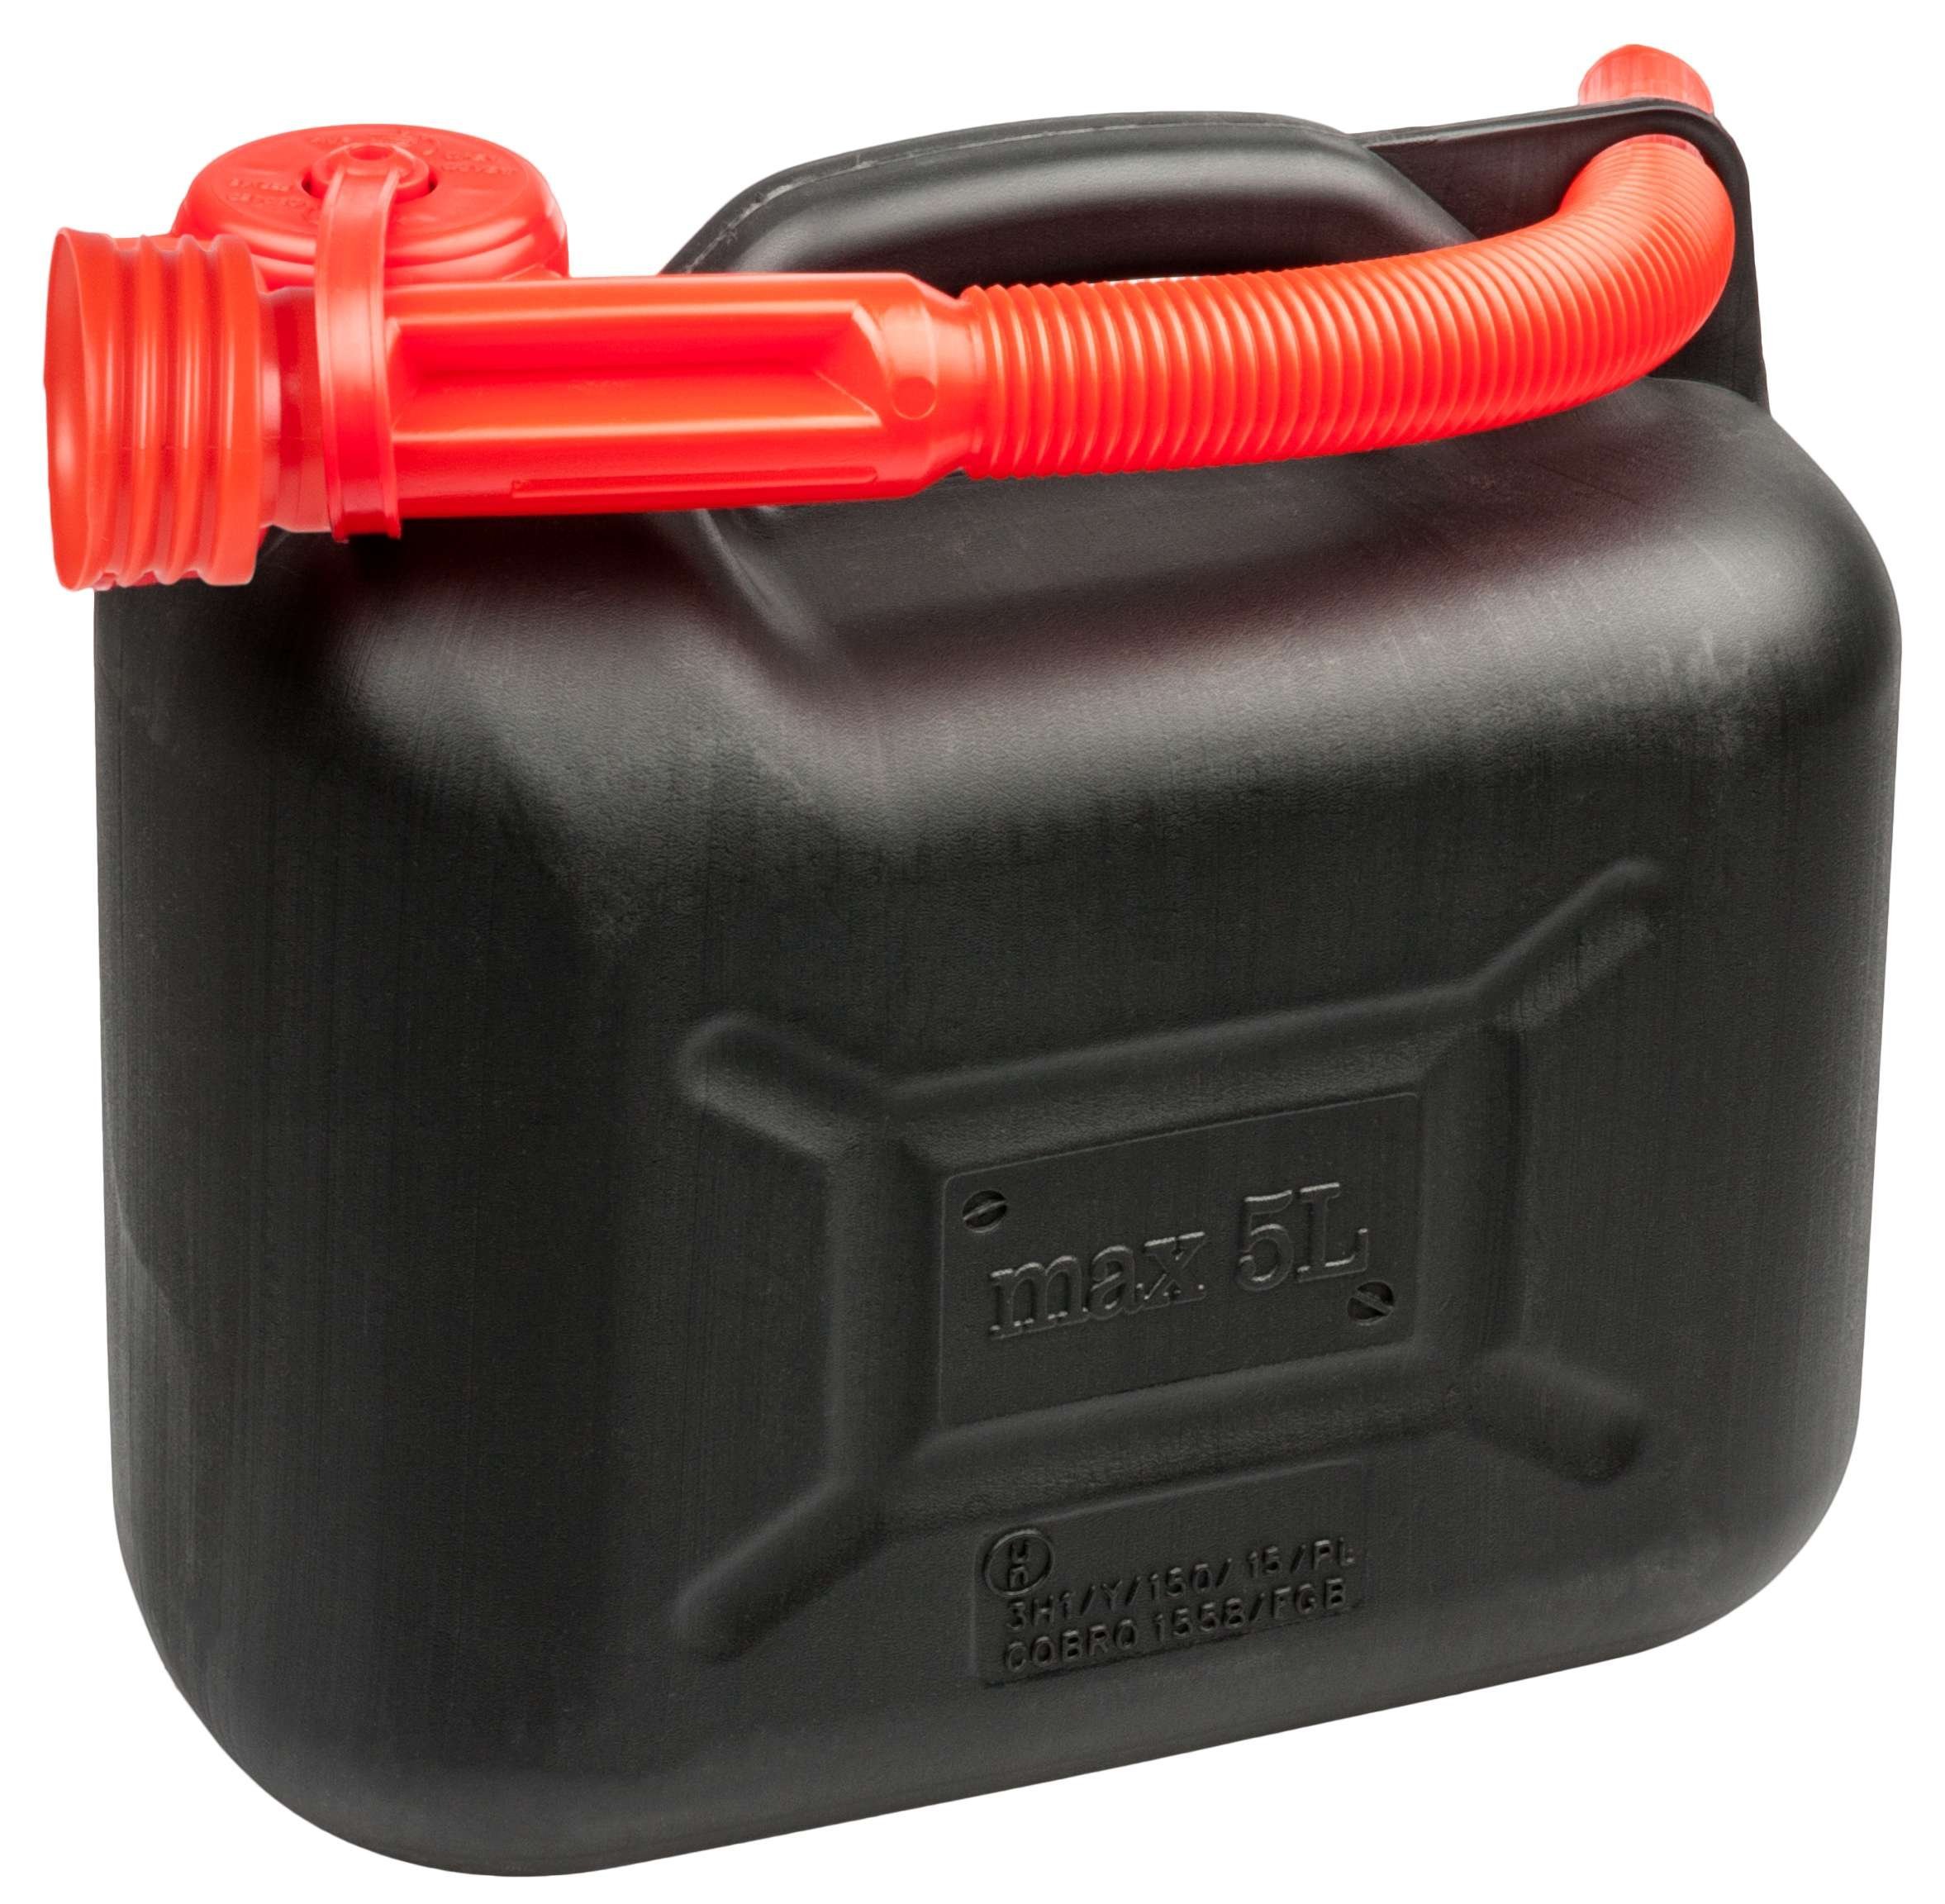 Benzinkanister 5 Liter - UN-geprüft mit Sicherheitsverschluss